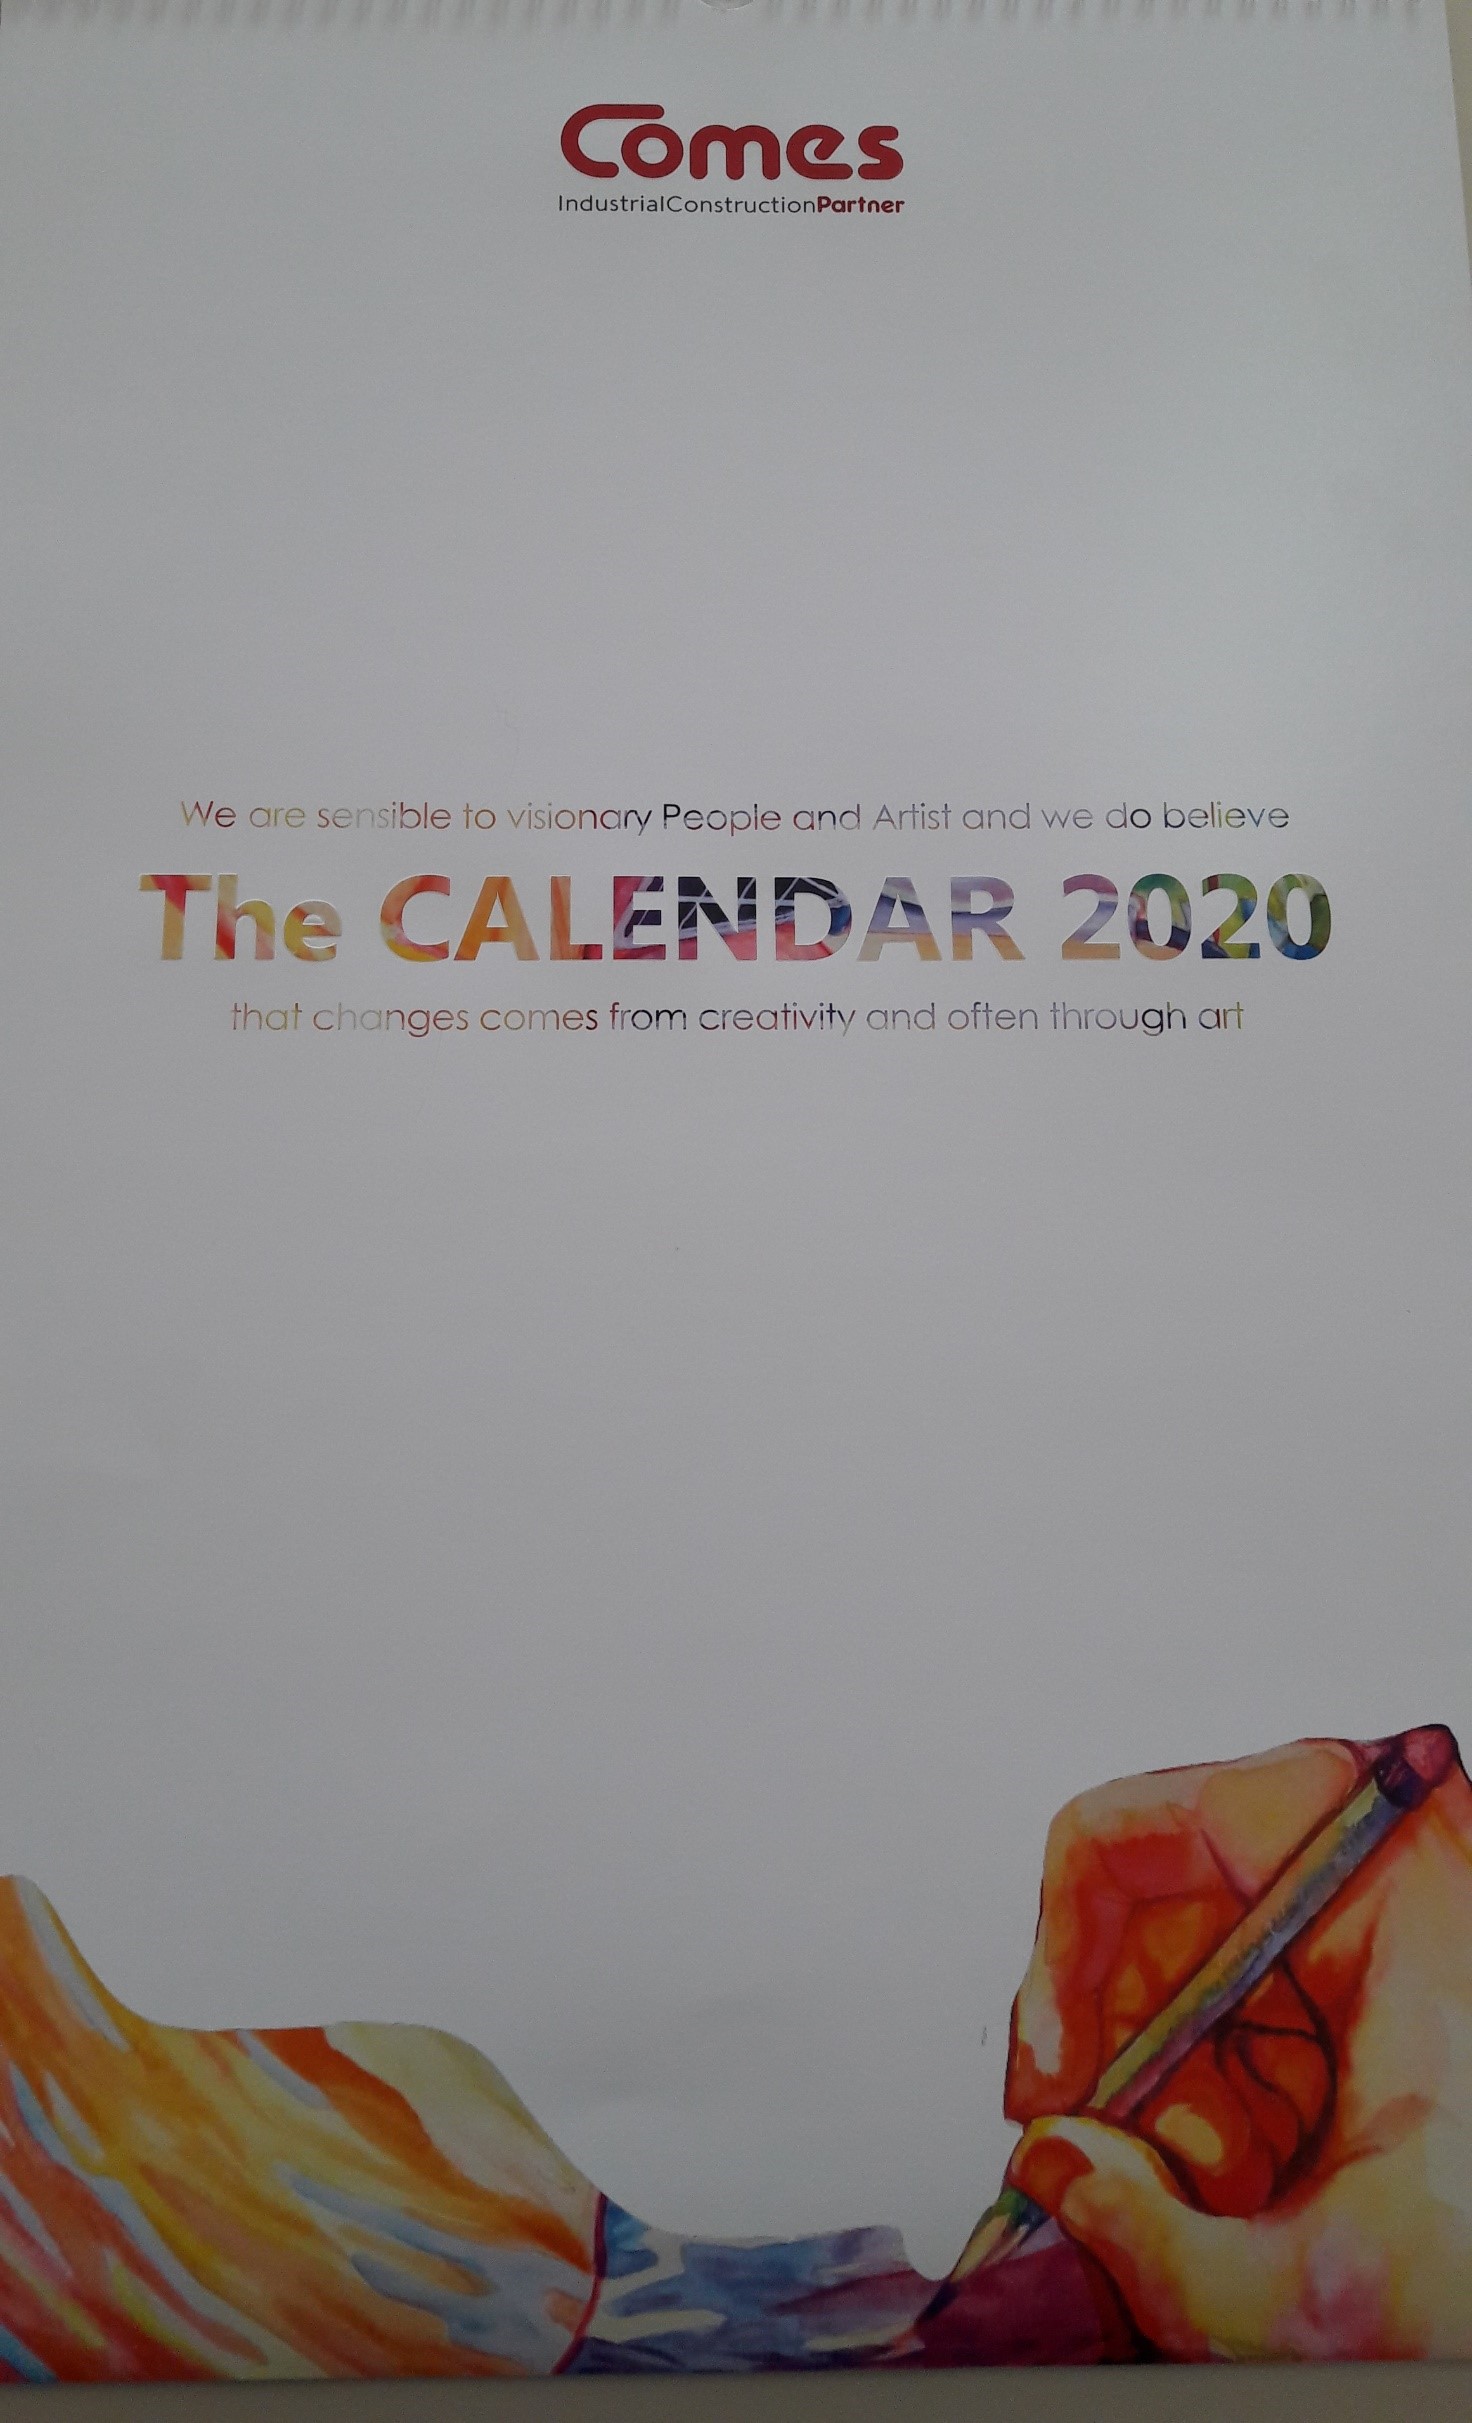 2020 01 20 Premiazione calendario comes leonardo futurismo 01